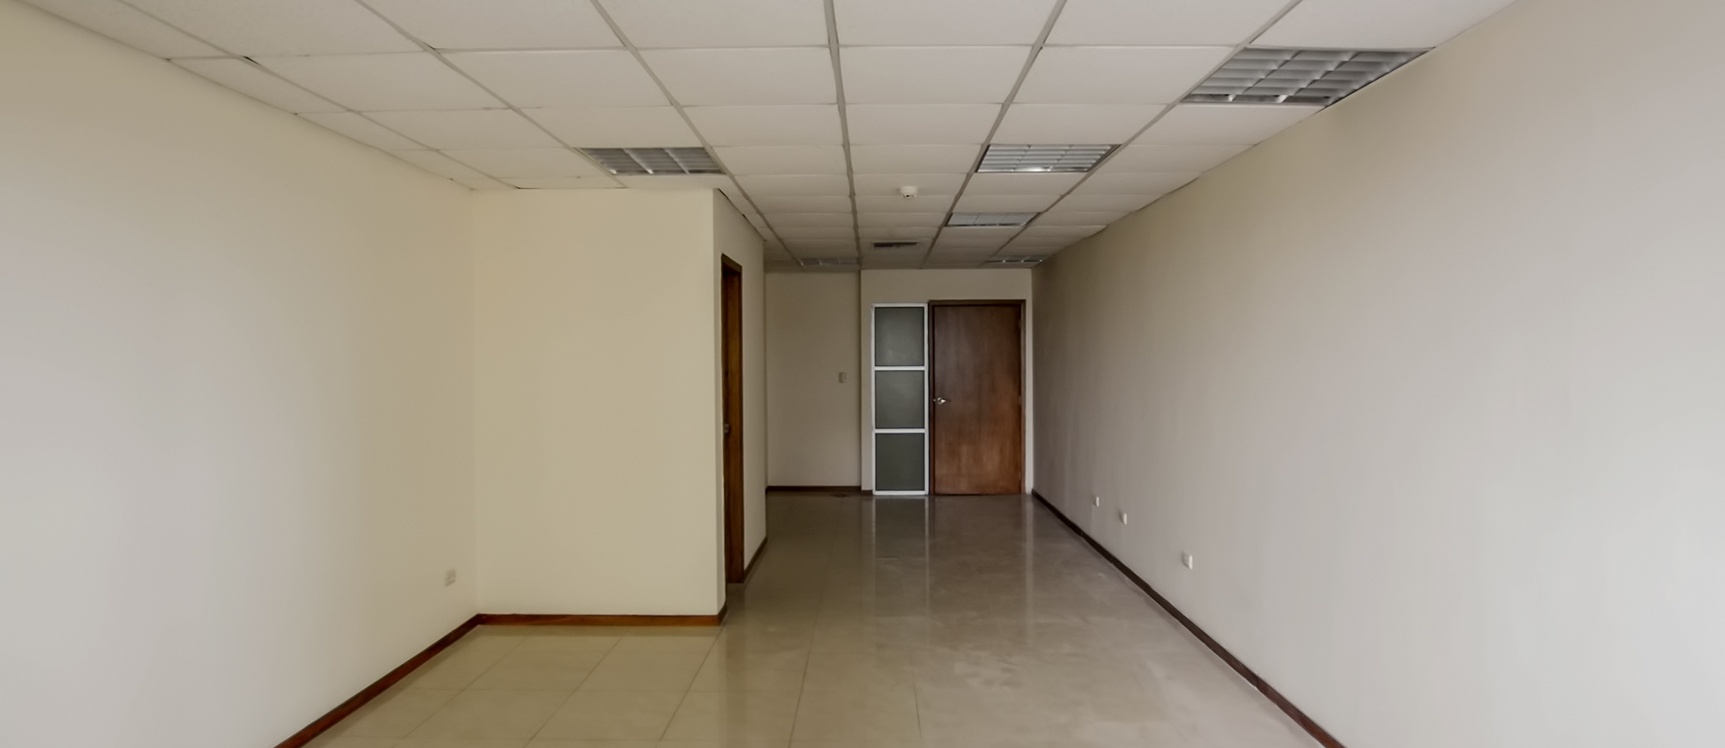 GeoBienes - Oficina en alquiler en Edificio Trade Building sector norte de Guayaquil - Plusvalia Guayaquil Casas de venta y alquiler Inmobiliaria Ecuador